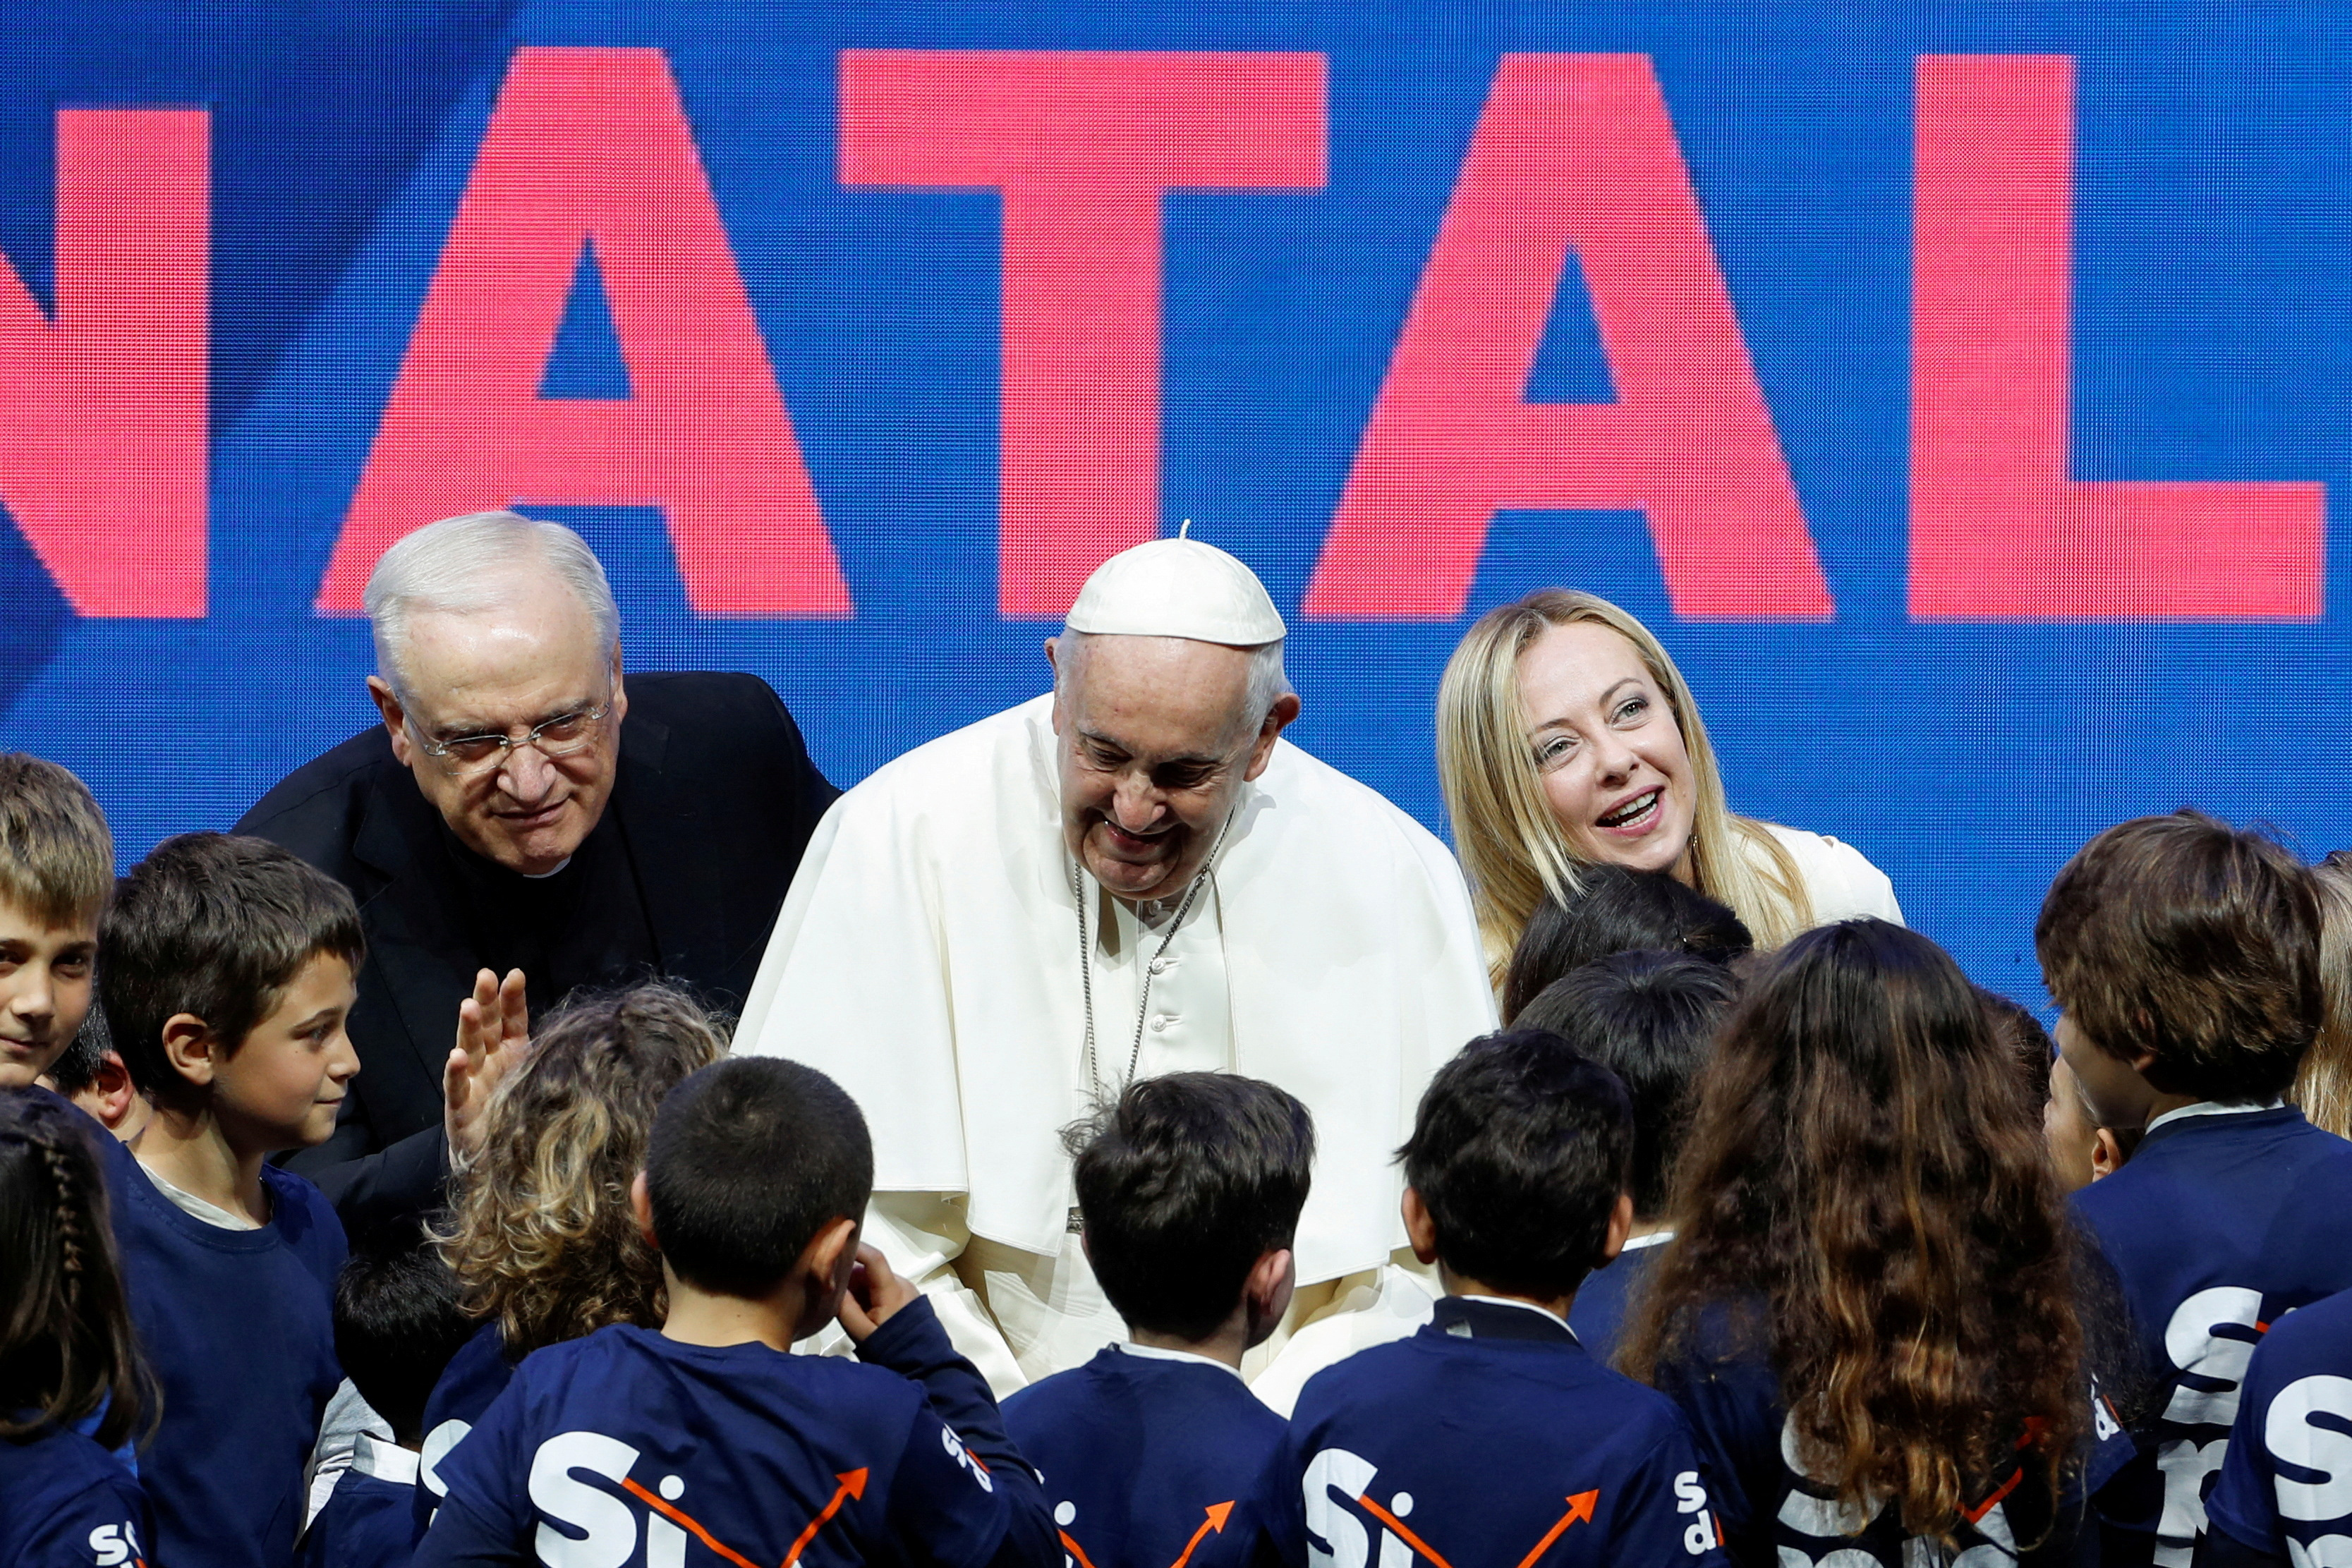 El papa Francisco quiere más bebés en Europa y pidió a los gobiernos que promuevan la natalidad